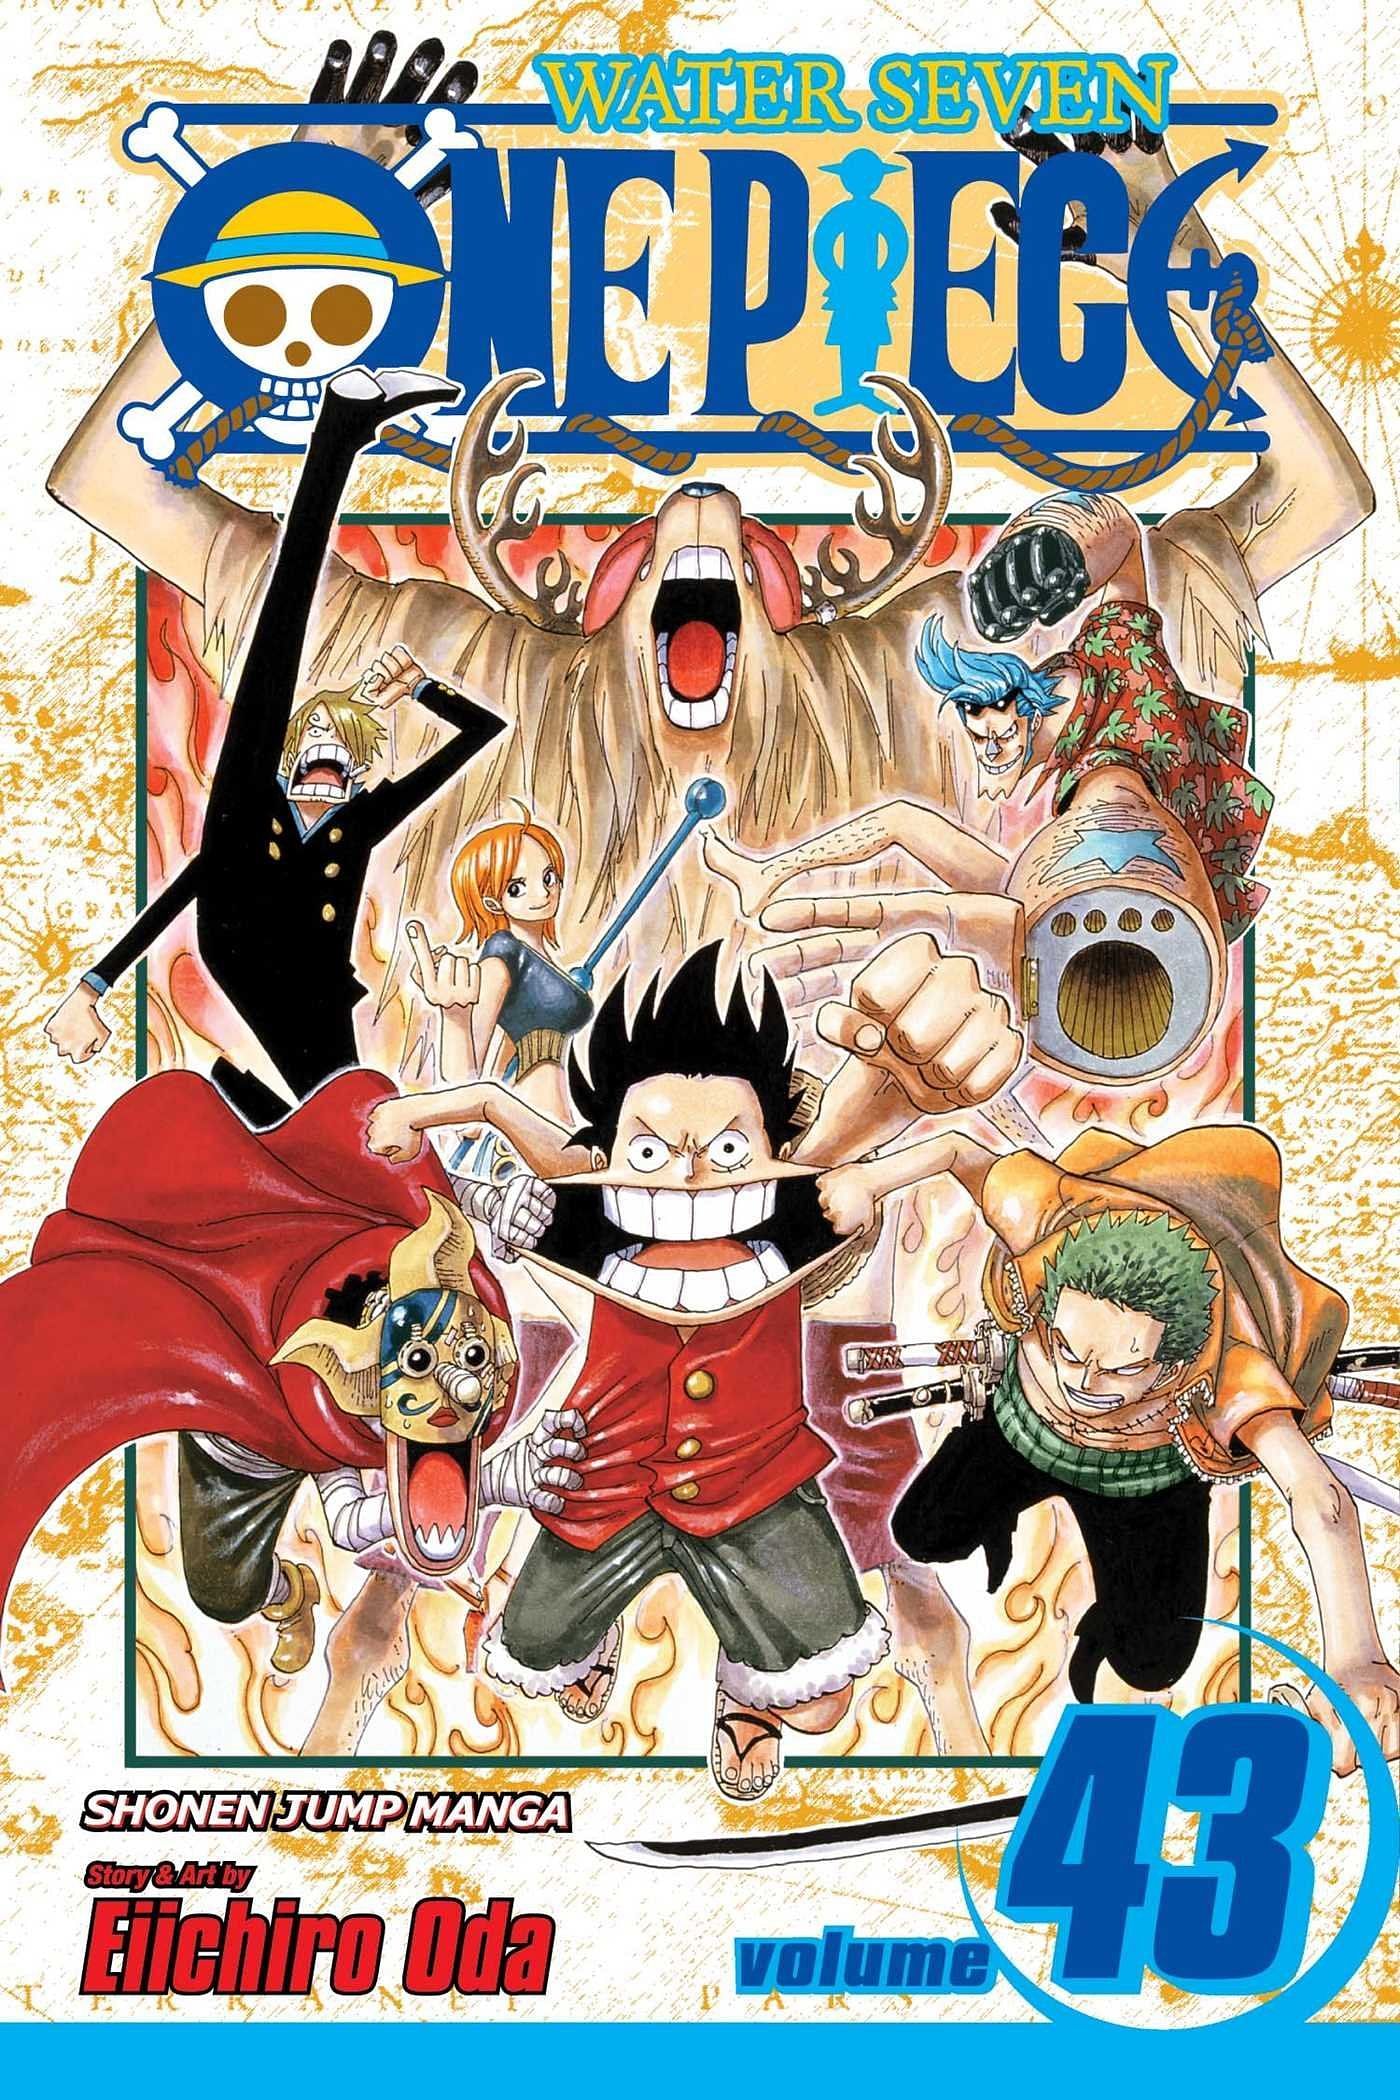 The cover art for One Piece Volume 43 (Image via Shueisha)